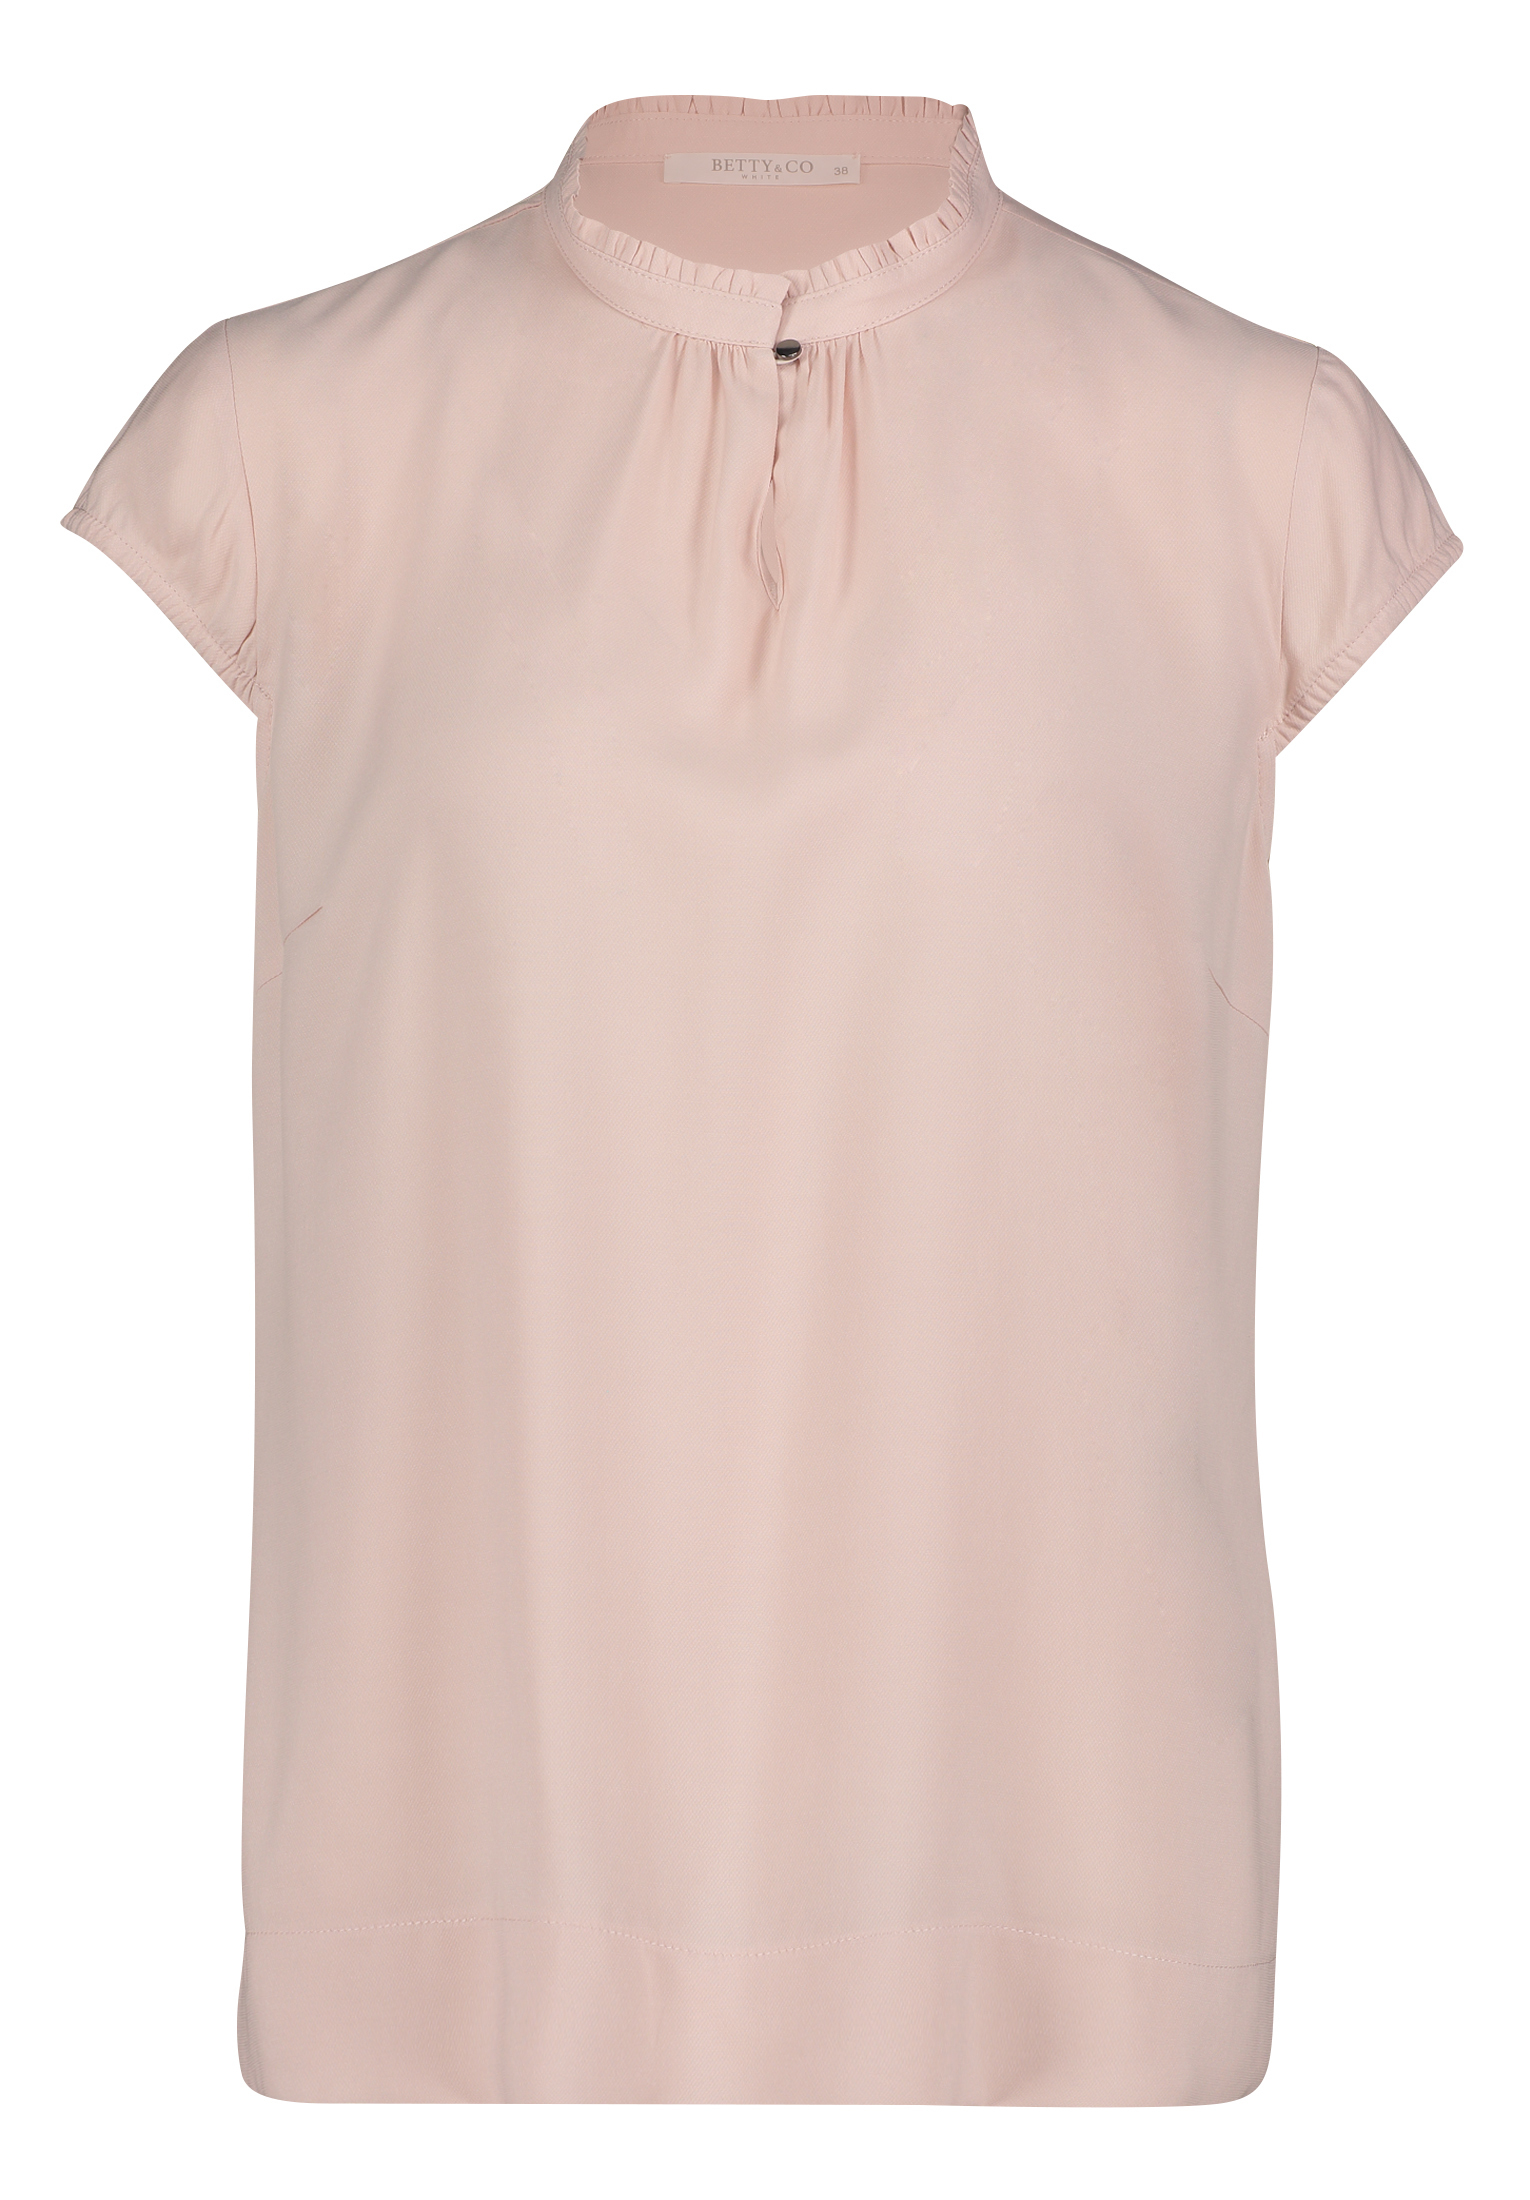 Shirt BETTY&CO, rosé